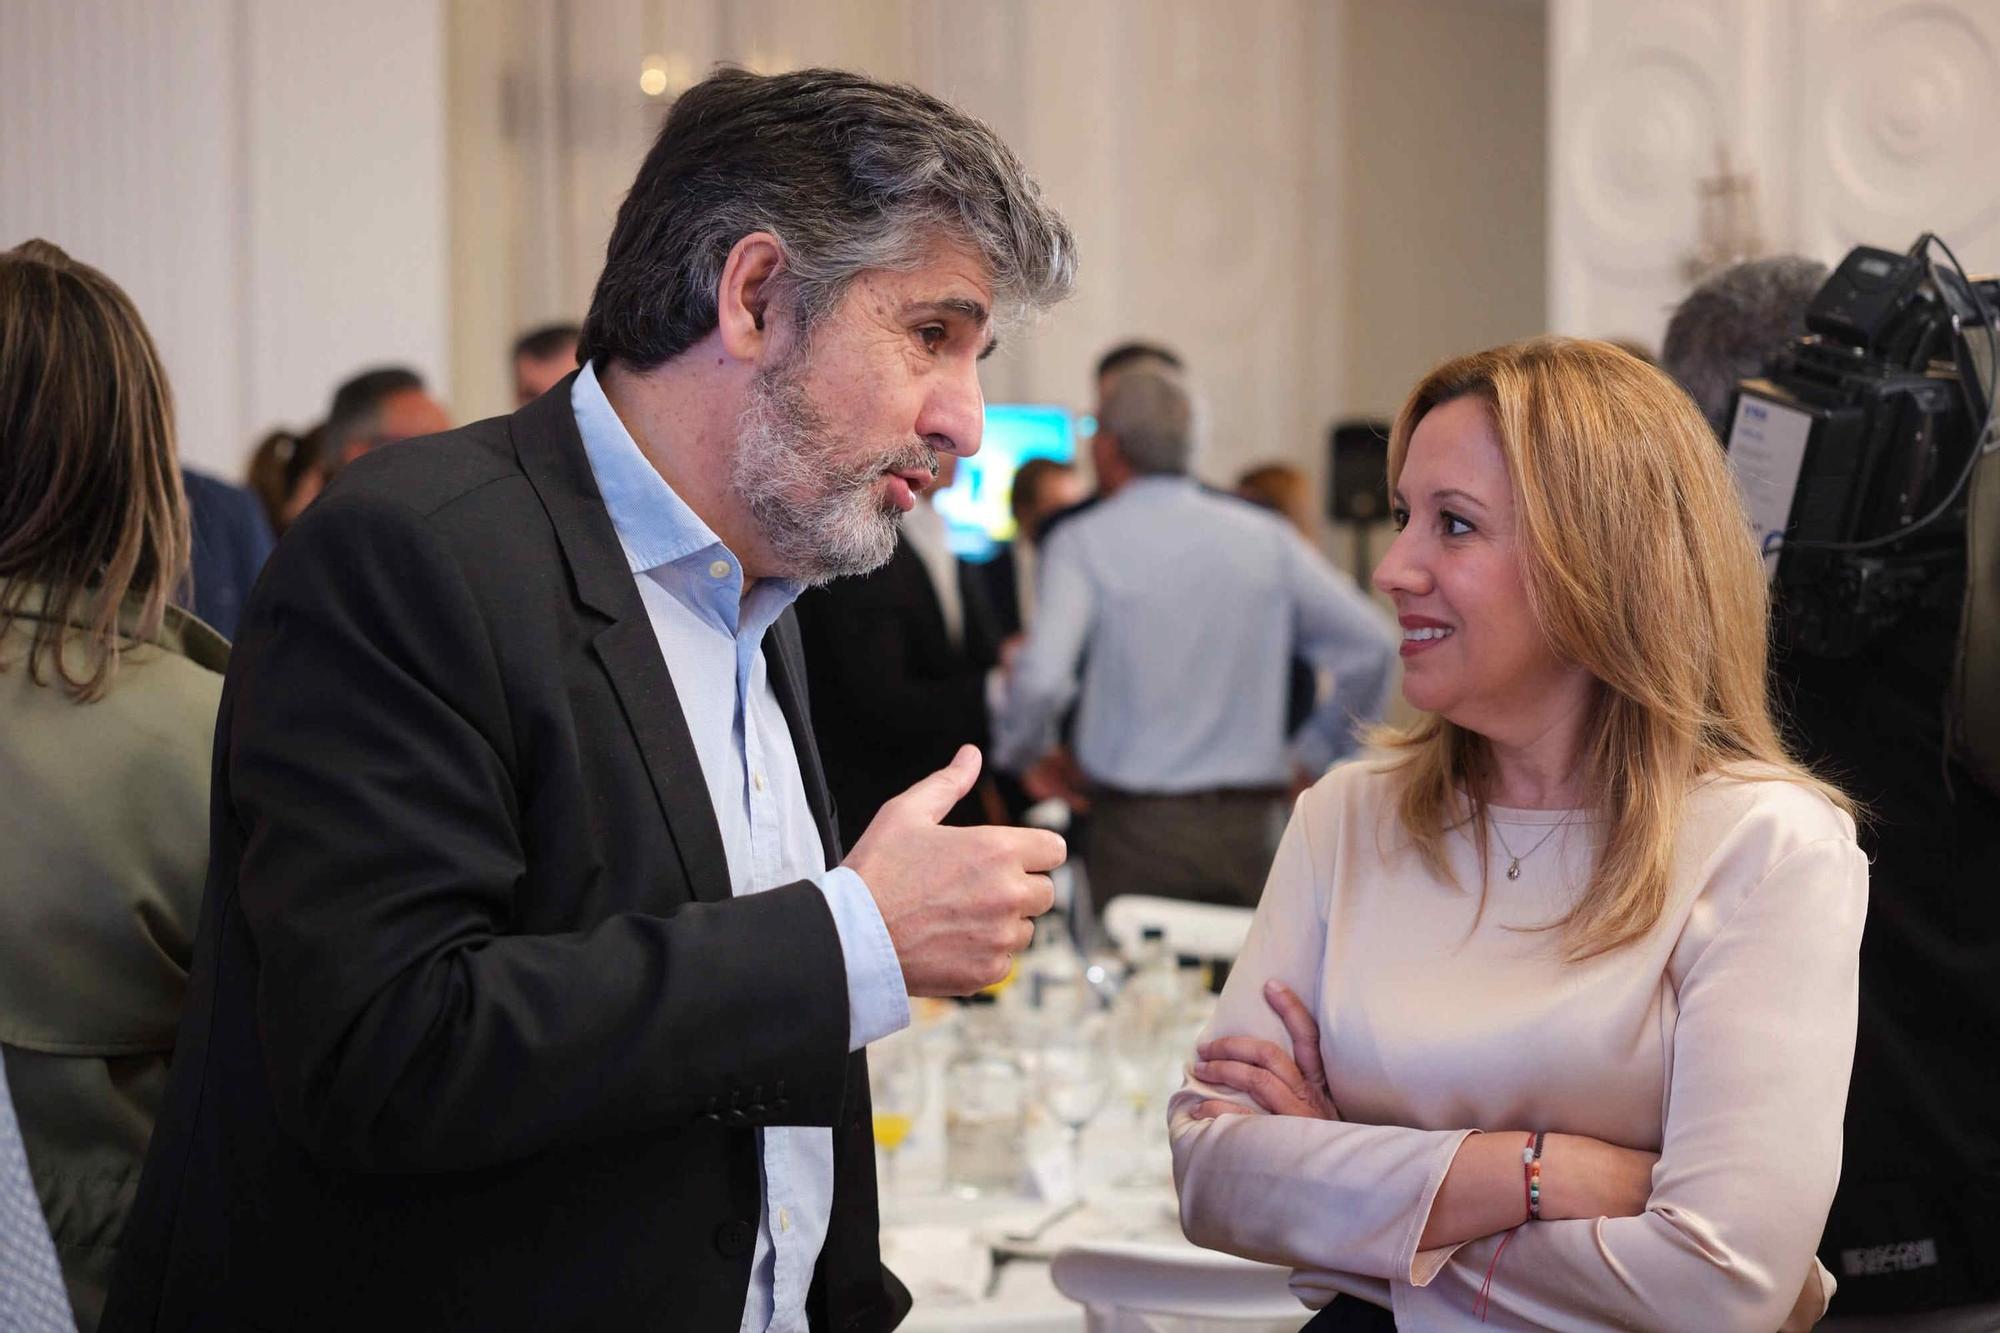 Prensa Ibérica anuncia su alianza con el Grupo Mediaset España